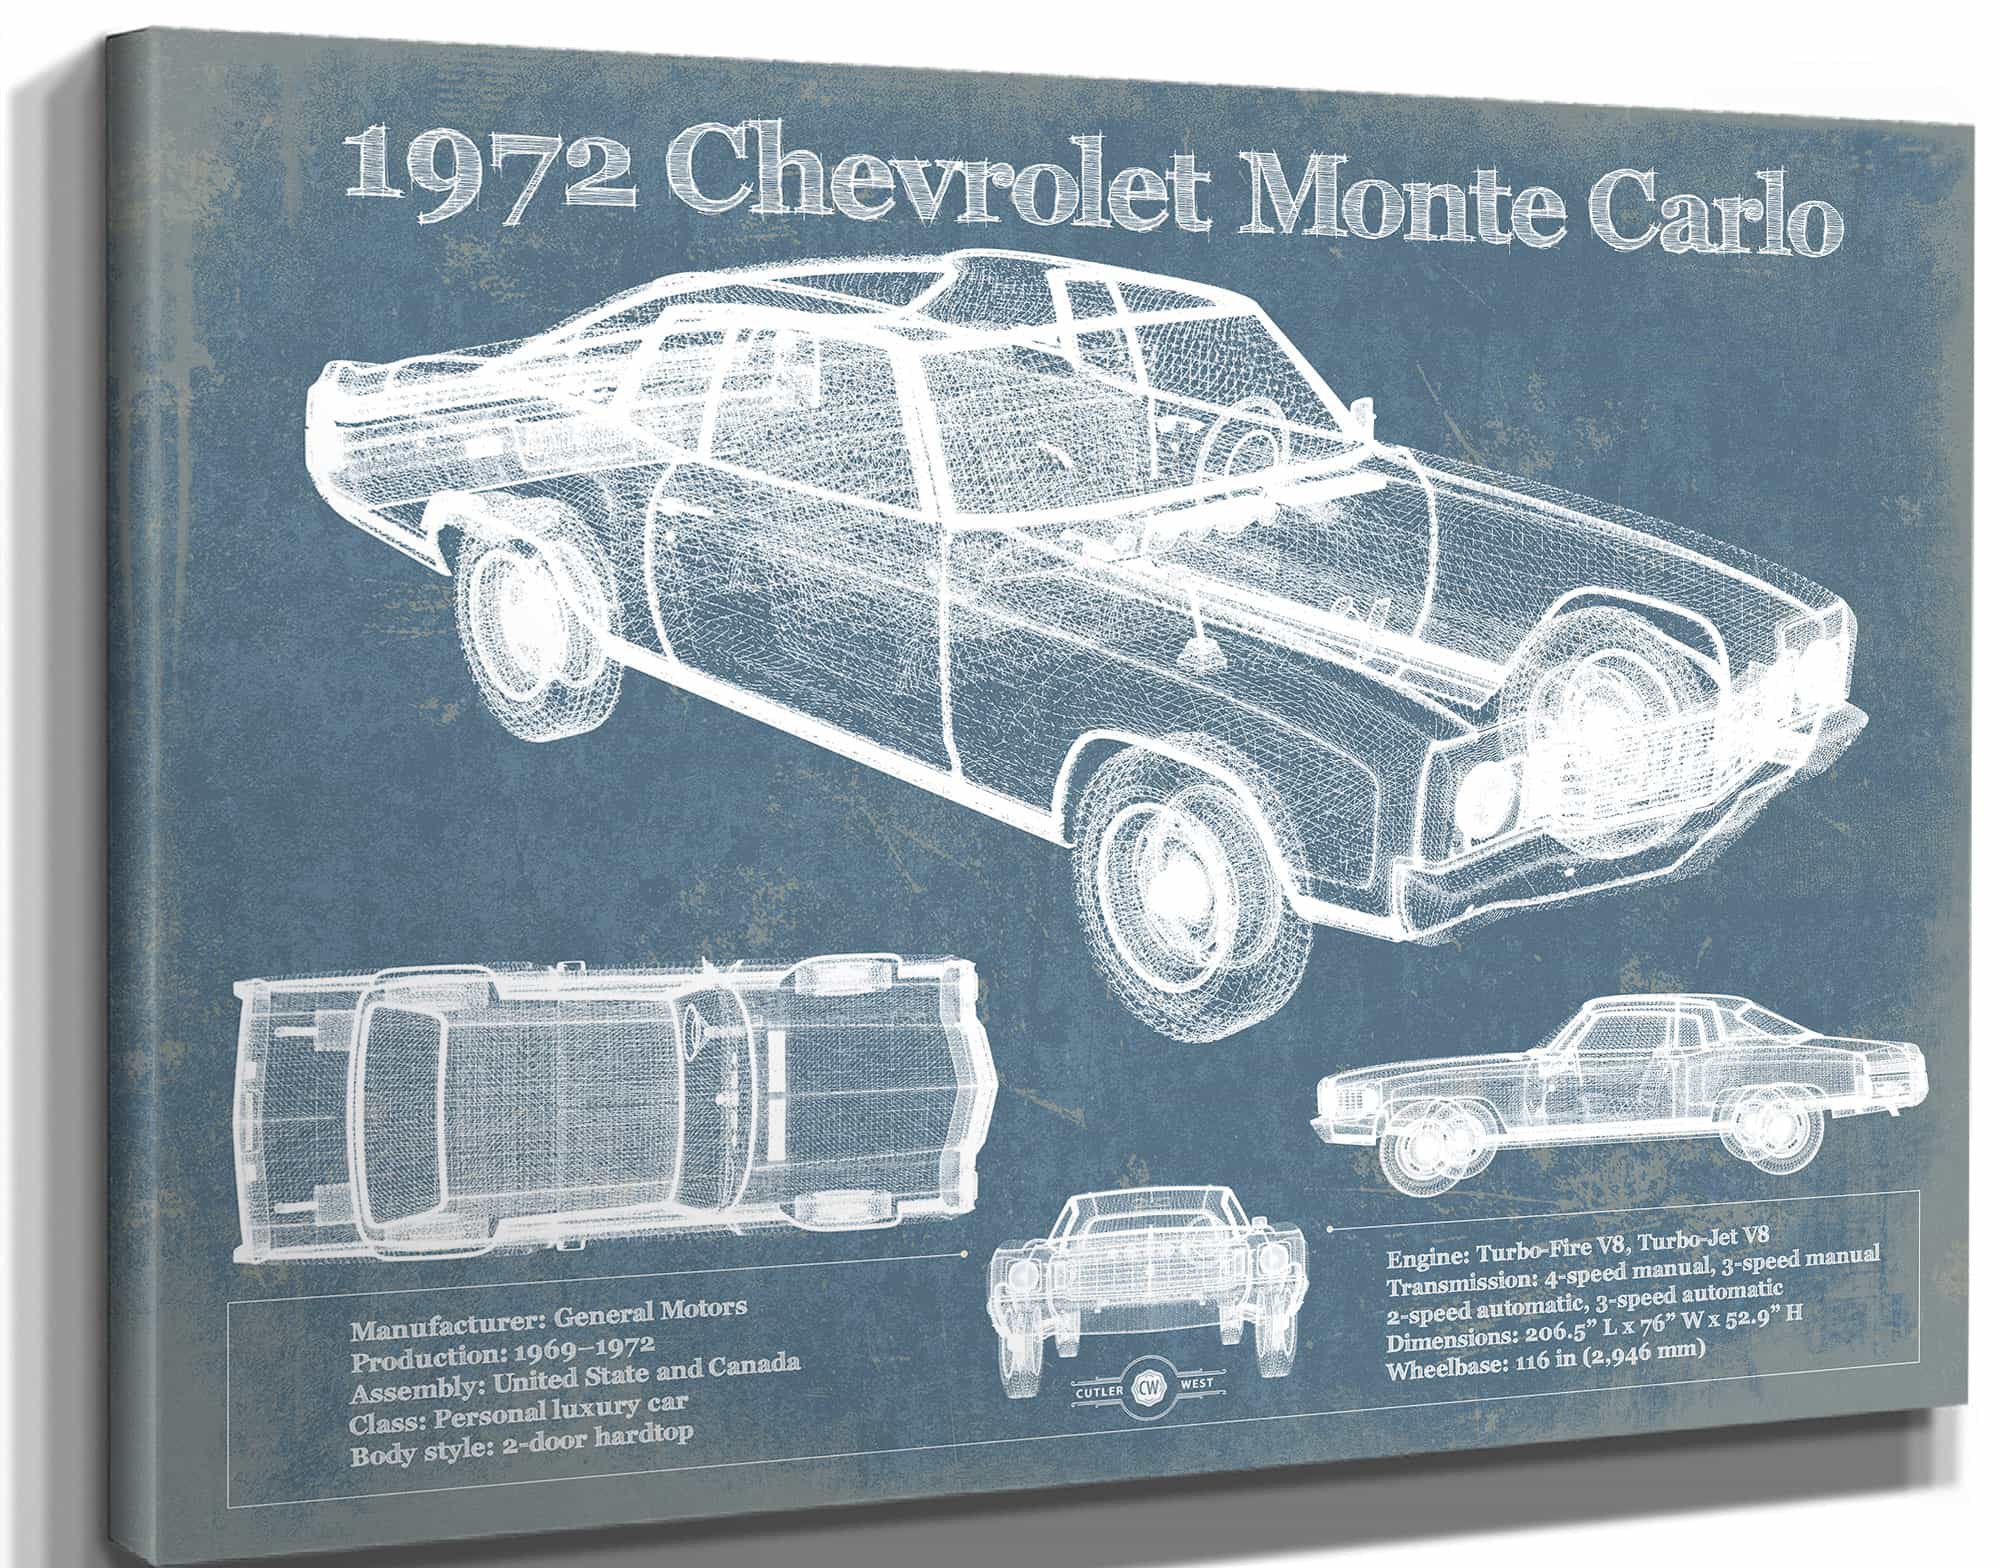 1972 Chevrolet Monte Carlo Blueprint Vintage Auto Patent Print